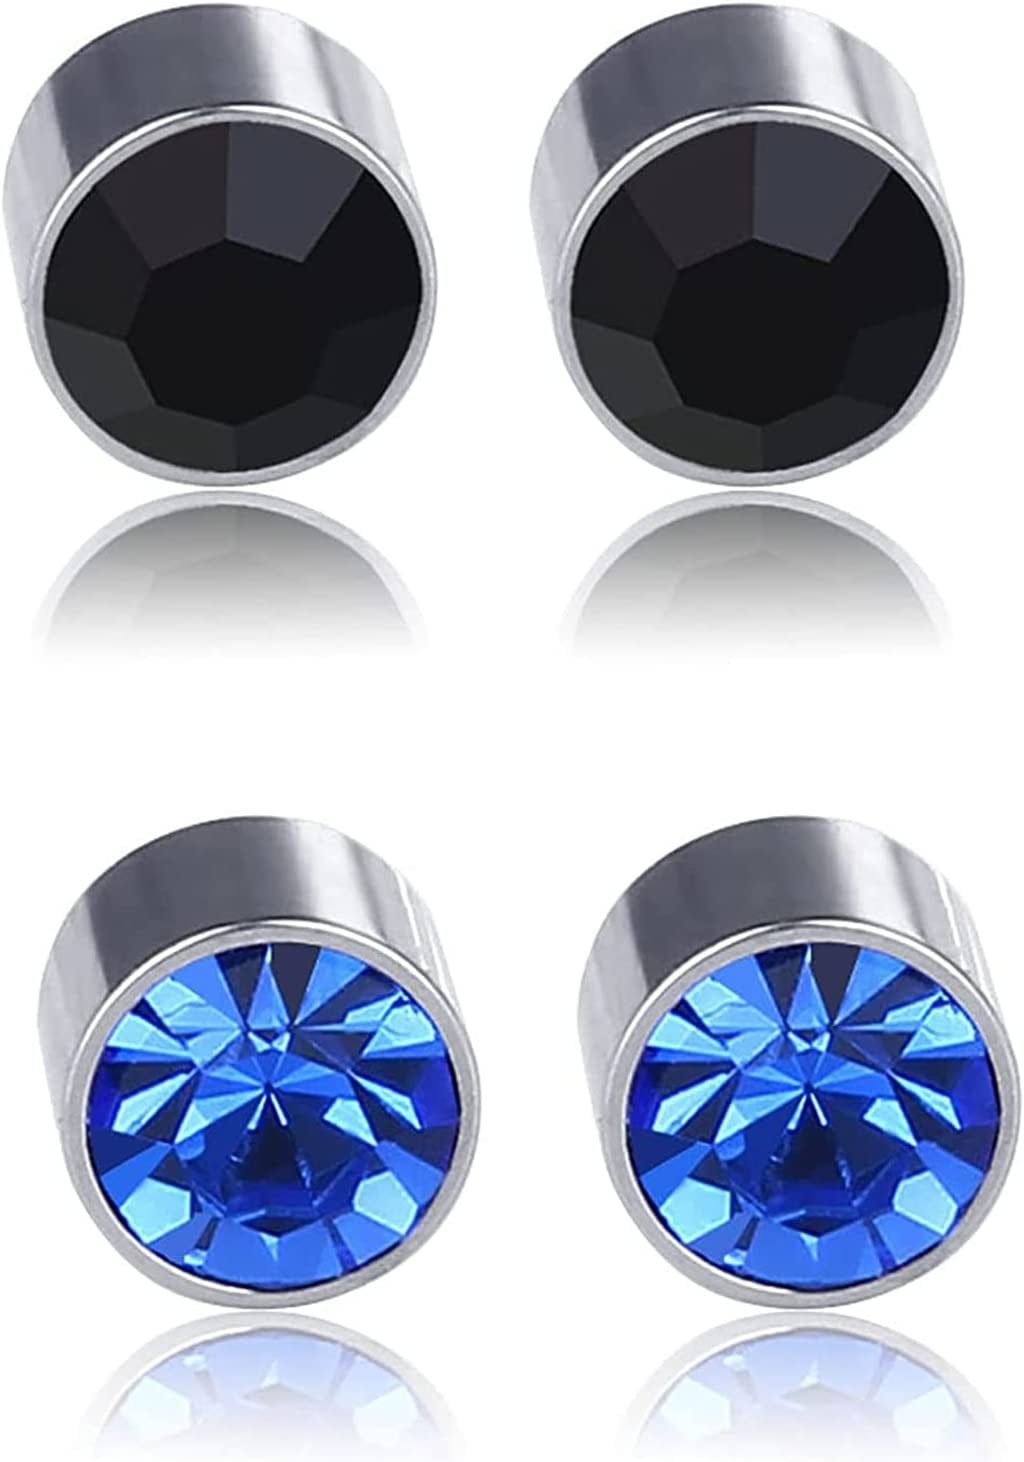 Crystal Black Stone Earrings | Magnetic Earrings Men | Magnet Earrings Men  - White Black - Aliexpress